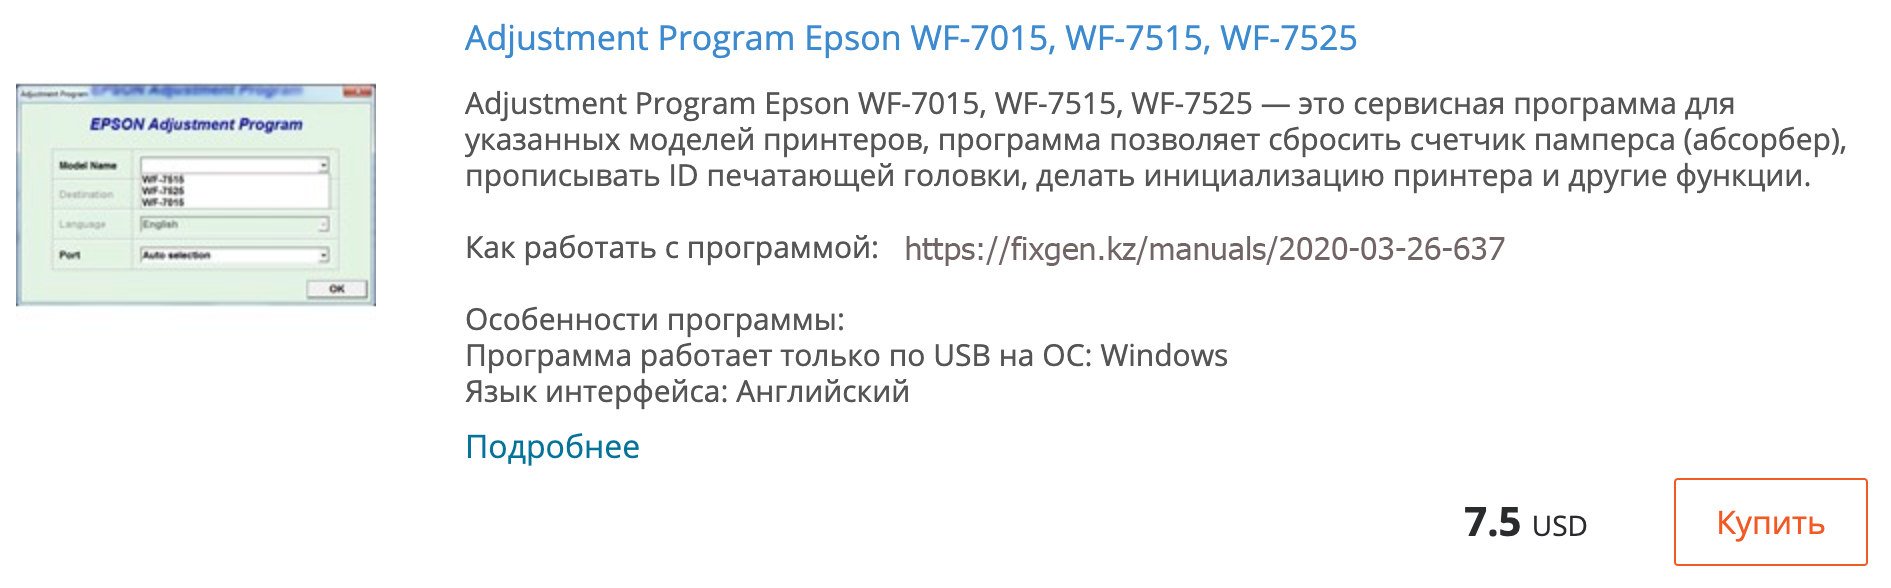 Купить Adjustment program Epson WF-7015, WF-7515, WF-7525 